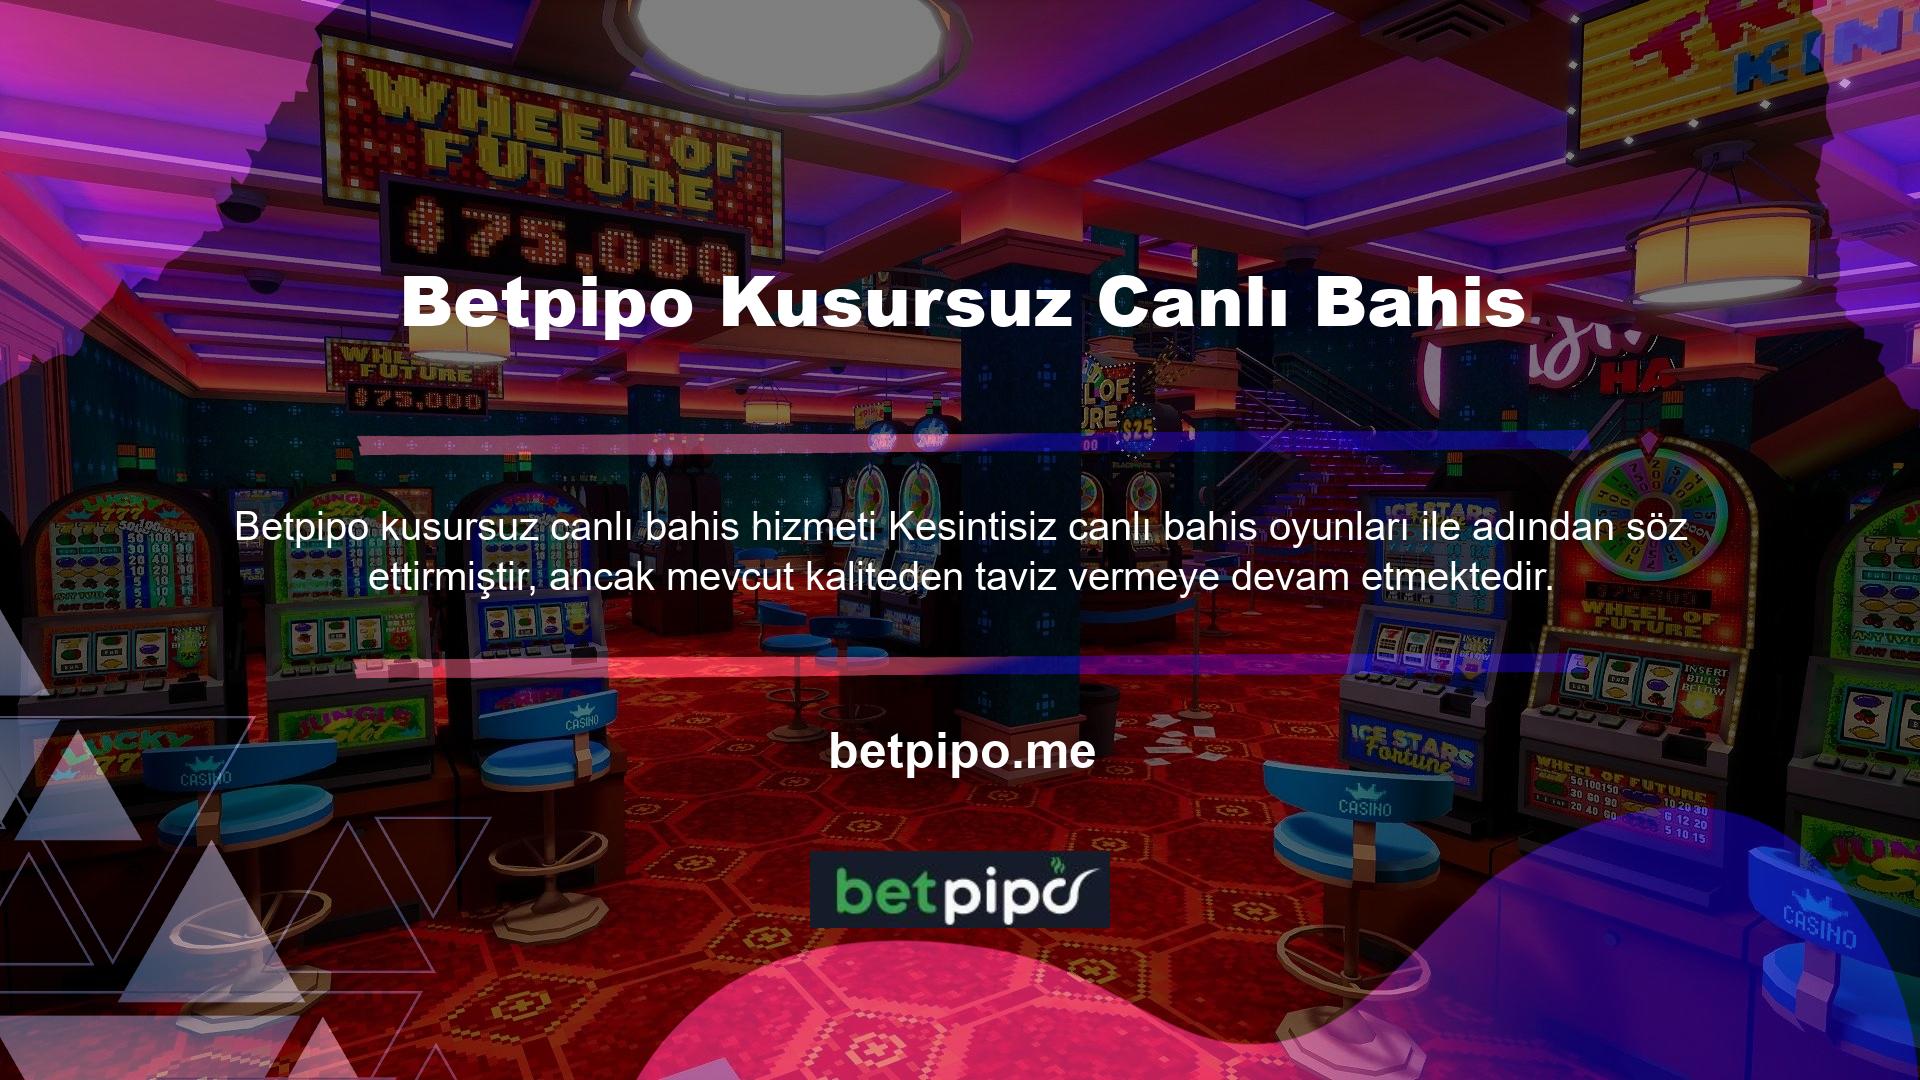 Ayrıca, Betpipo Canlı Bahis Hizmeti Oyun açısından zengin Betpipo Canlı Bahis, üyelerin canlı oyun hizmeti aracılığıyla diğer kullanıcılarla güvenli bir şekilde sohbet etmesine, oynamasına ve bahis oynamasına olanak tanır